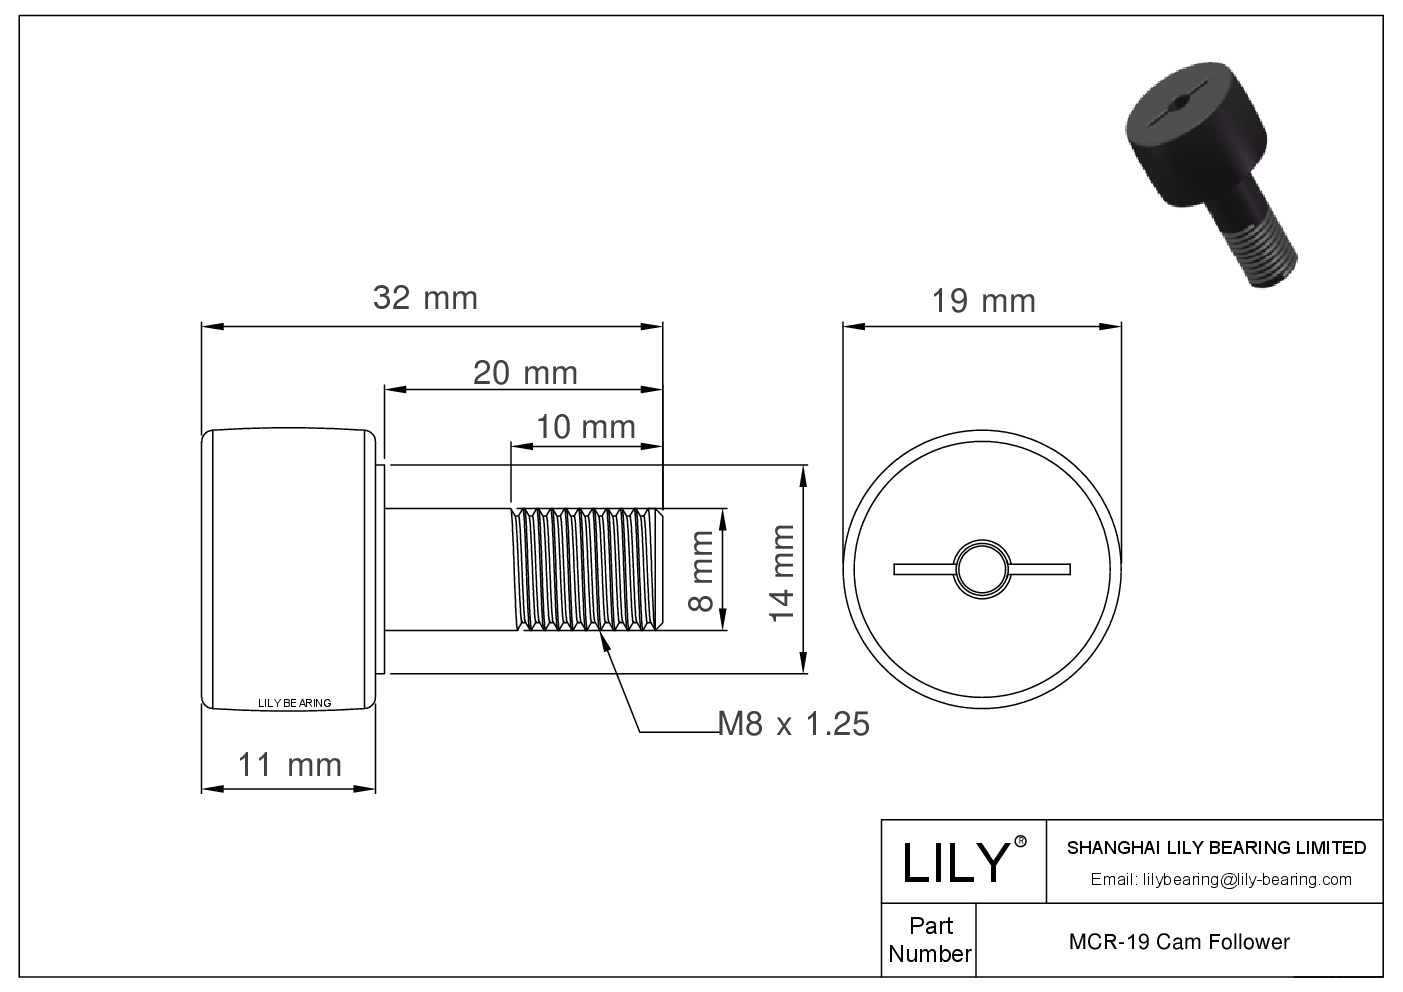 MCR-19 Stud Style Metric Cam Followers CAD图形